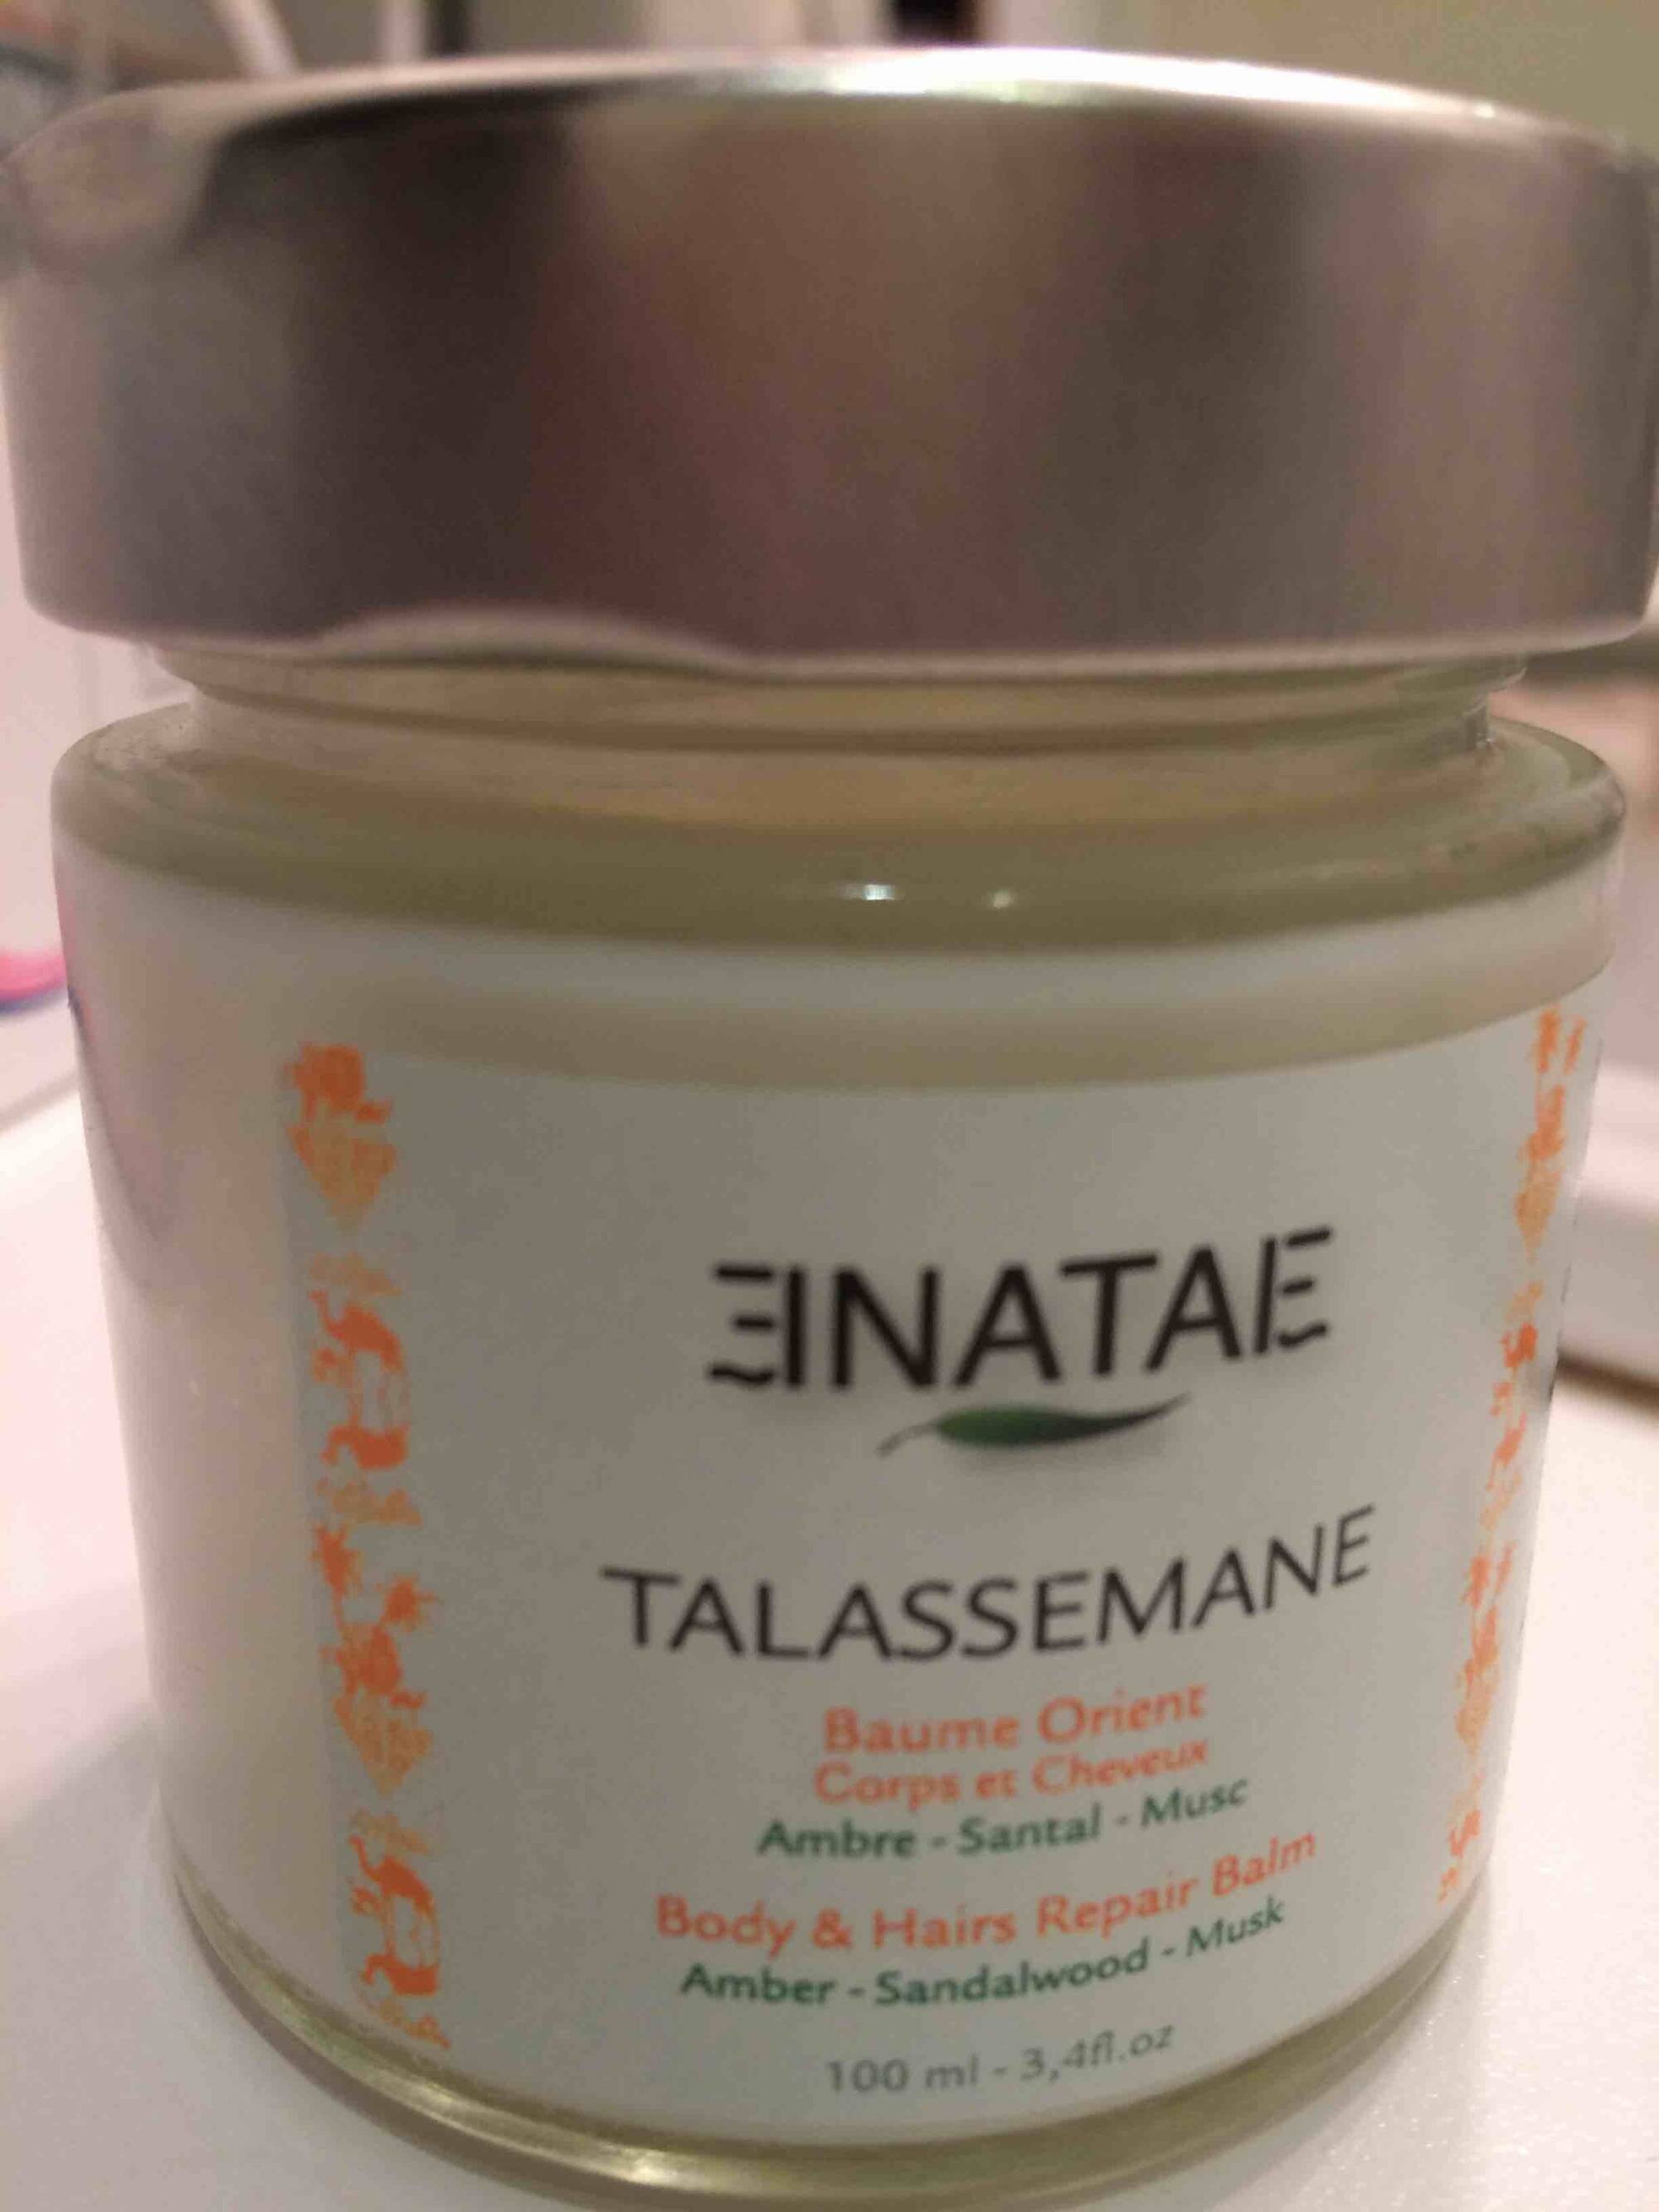 ENATAE - Talassemane - Baume orient corps et cheveux